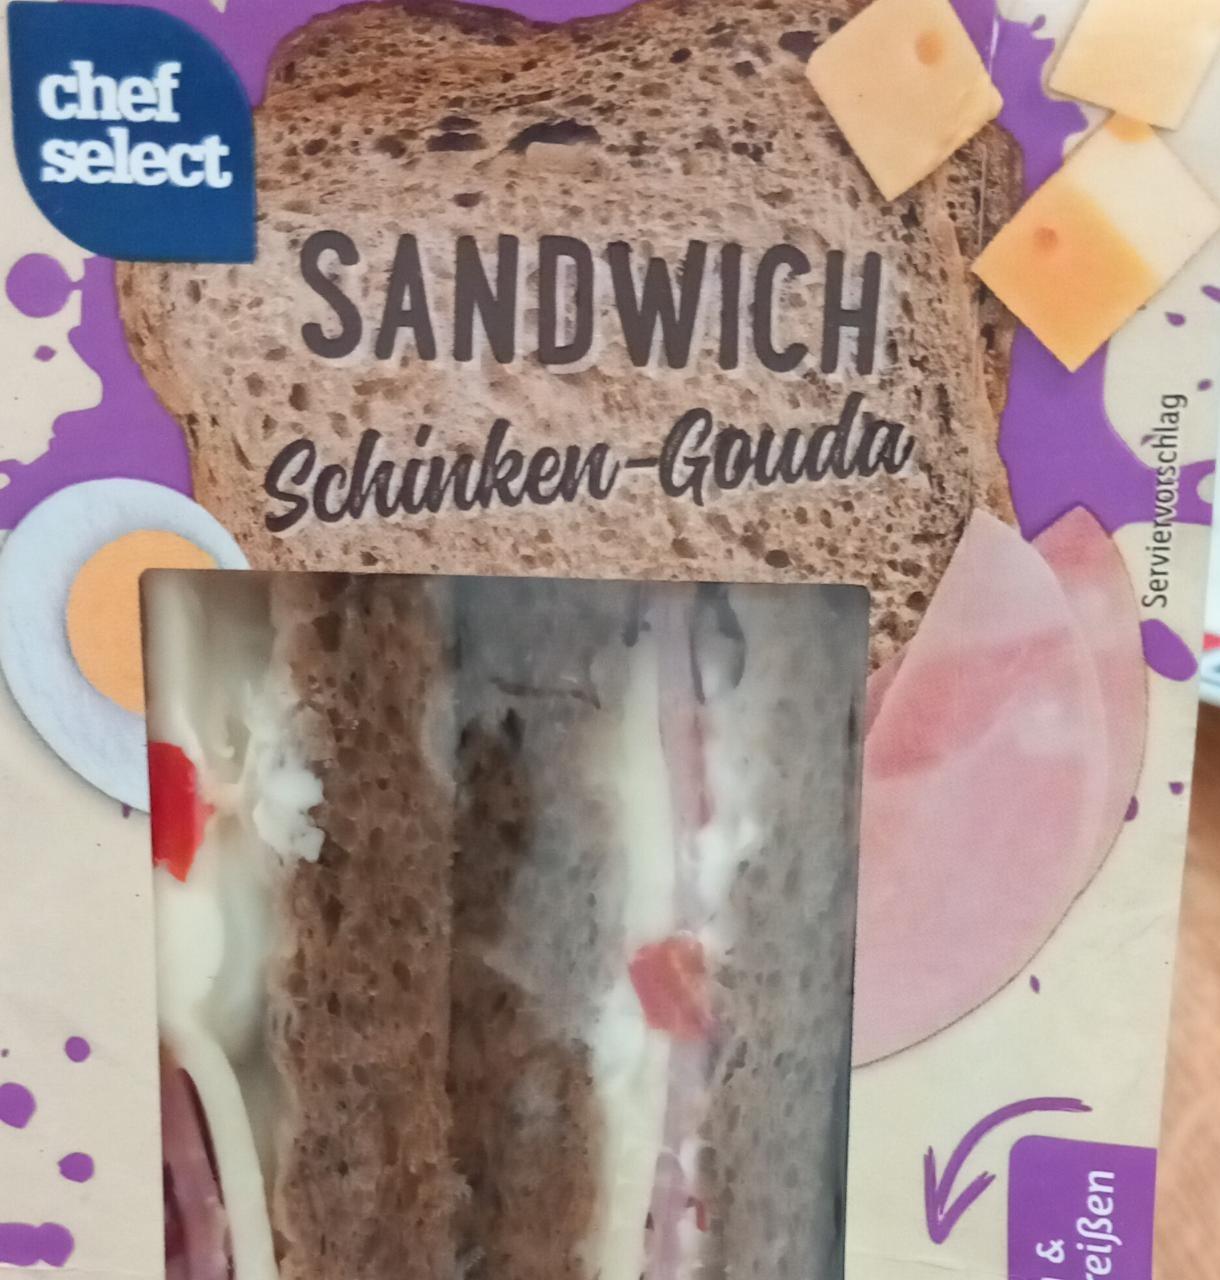 Sandwich Schinken-Gouda Chef Select - hodnoty nutriční kalorie, kJ a